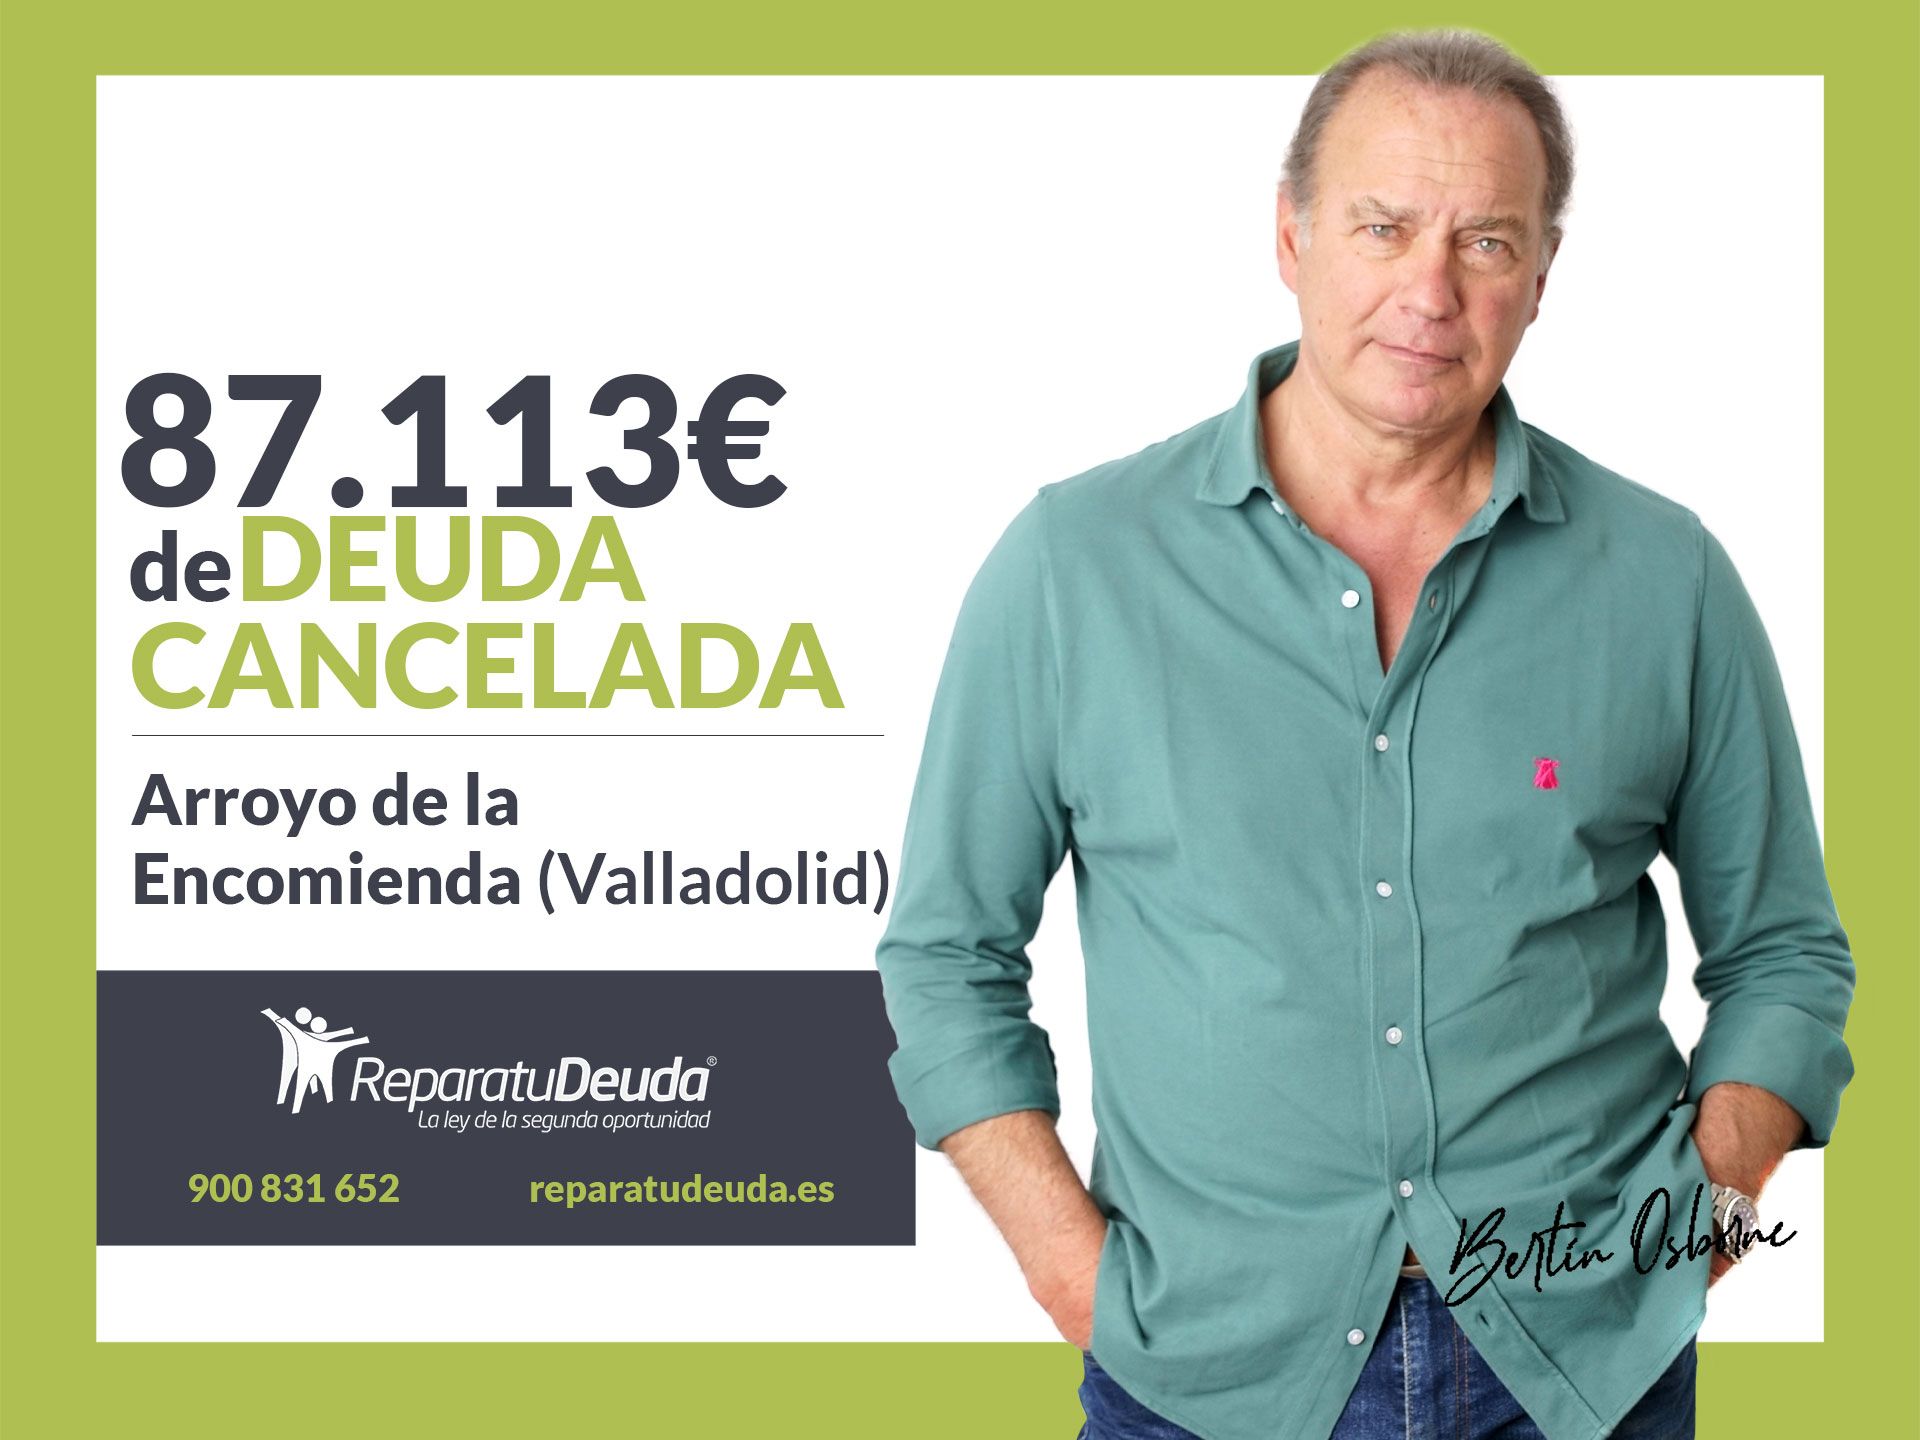 Repara tu Deuda cancela 87.113? en Arroyo de la Encomienda (Valladolid) con la Ley de Segunda Oportunidad